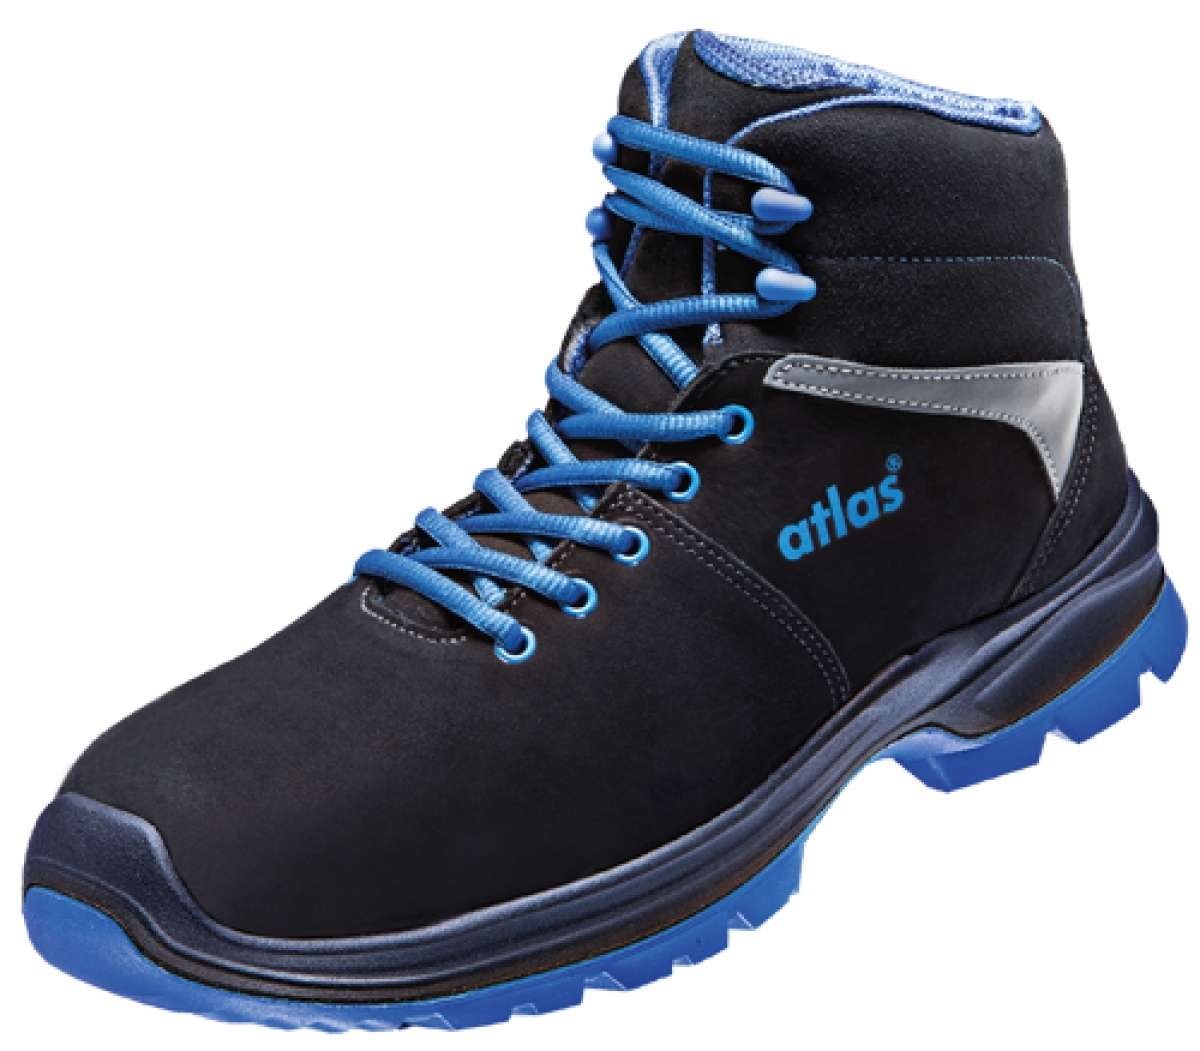 ATLAS-S3-Sicherheitsschuhe, ERGO-MED 805 XP, ESD, Weite 10, schwarz/blau